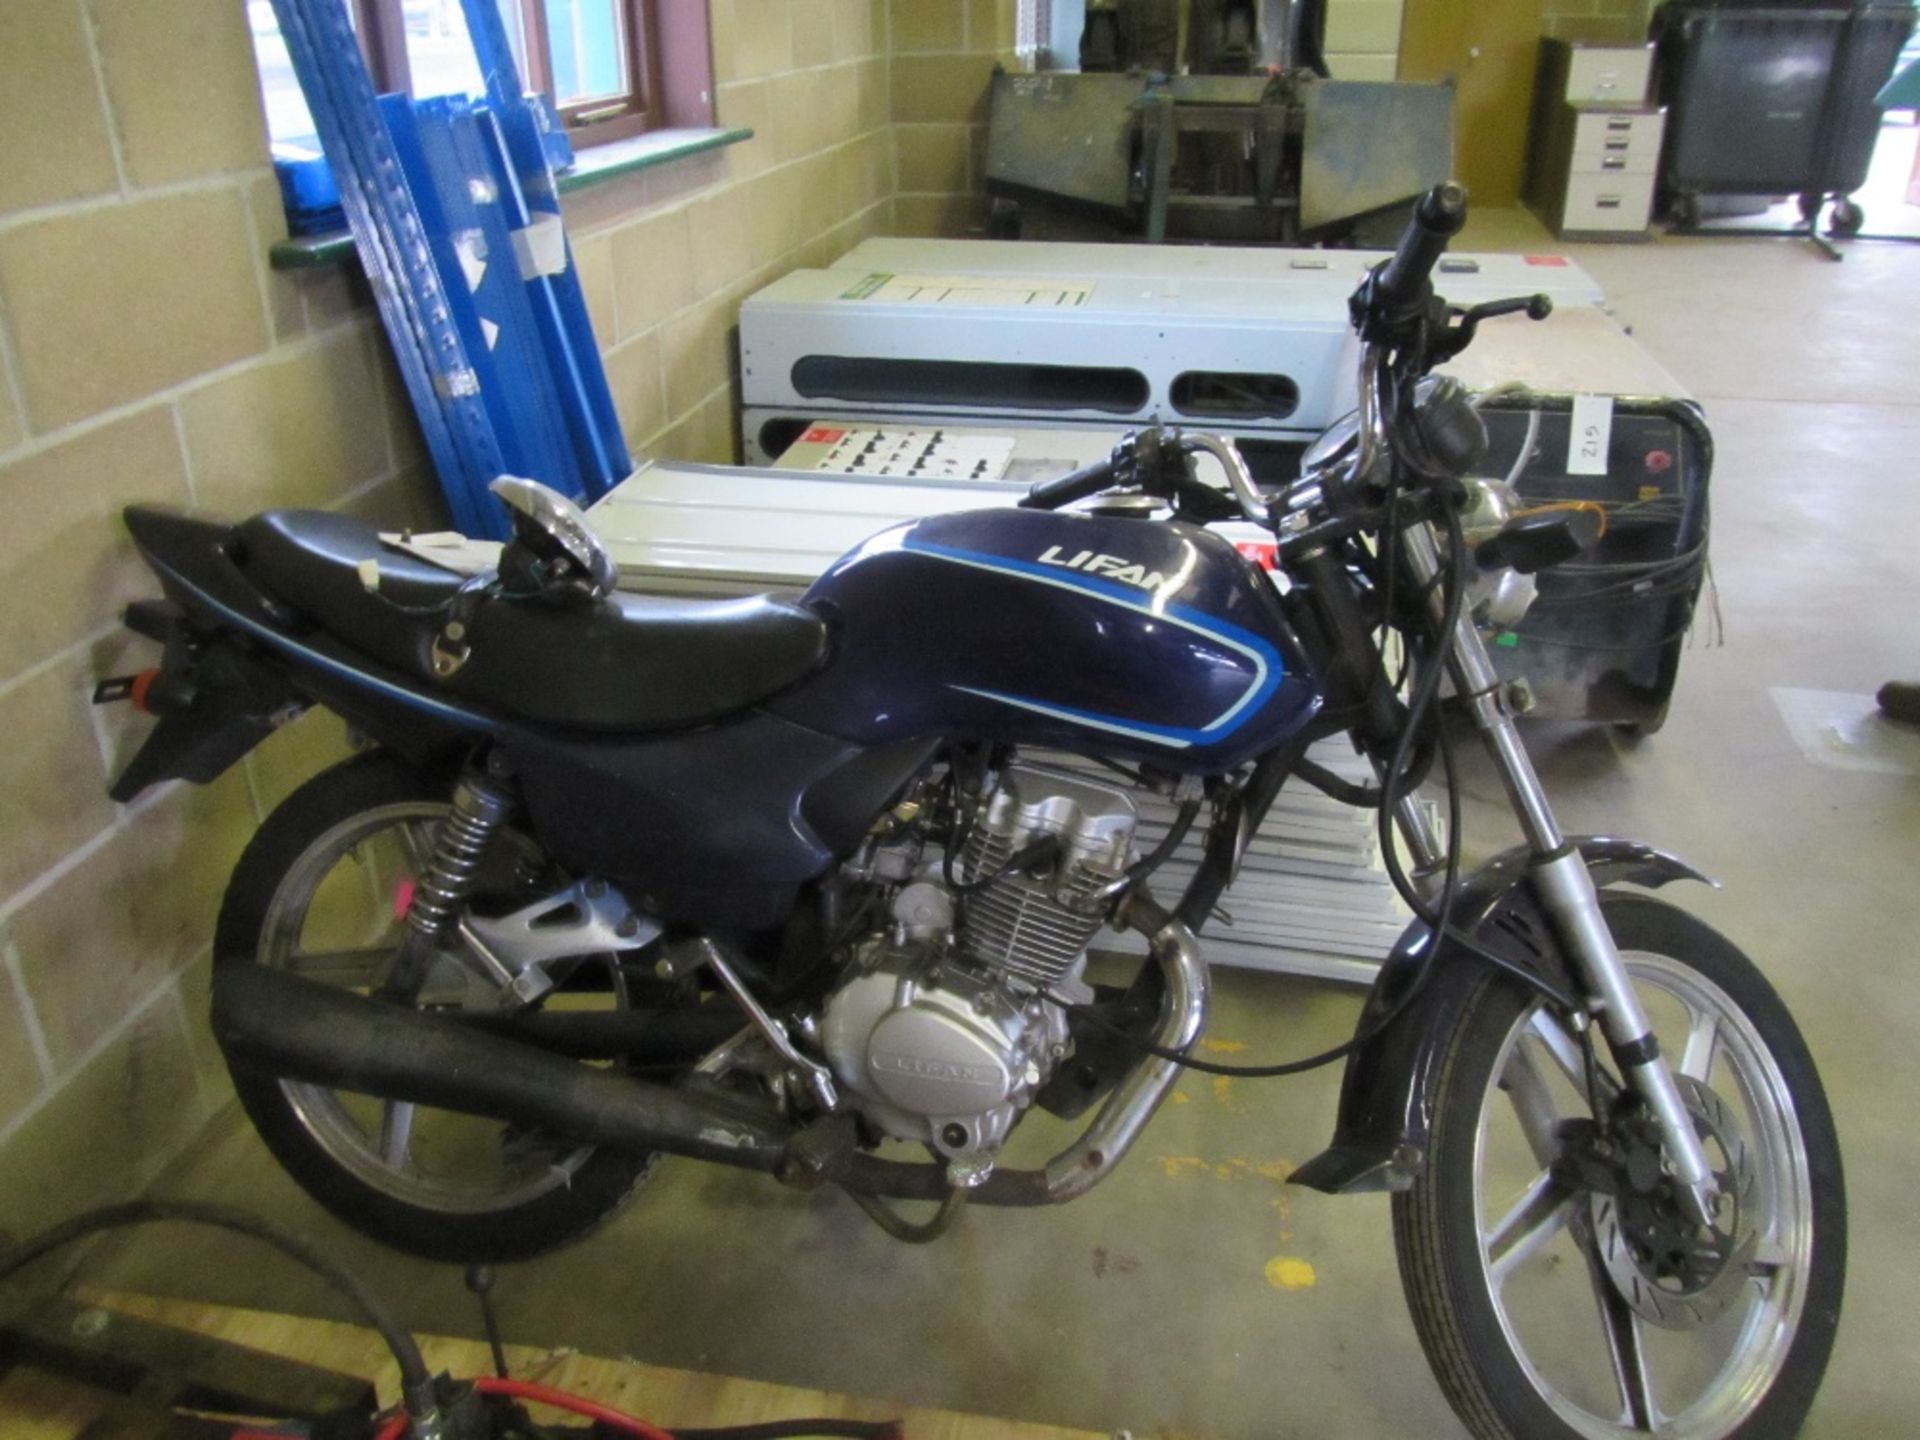 125cc Motorbike. Reg. No. EU61 AOP - Image 3 of 3